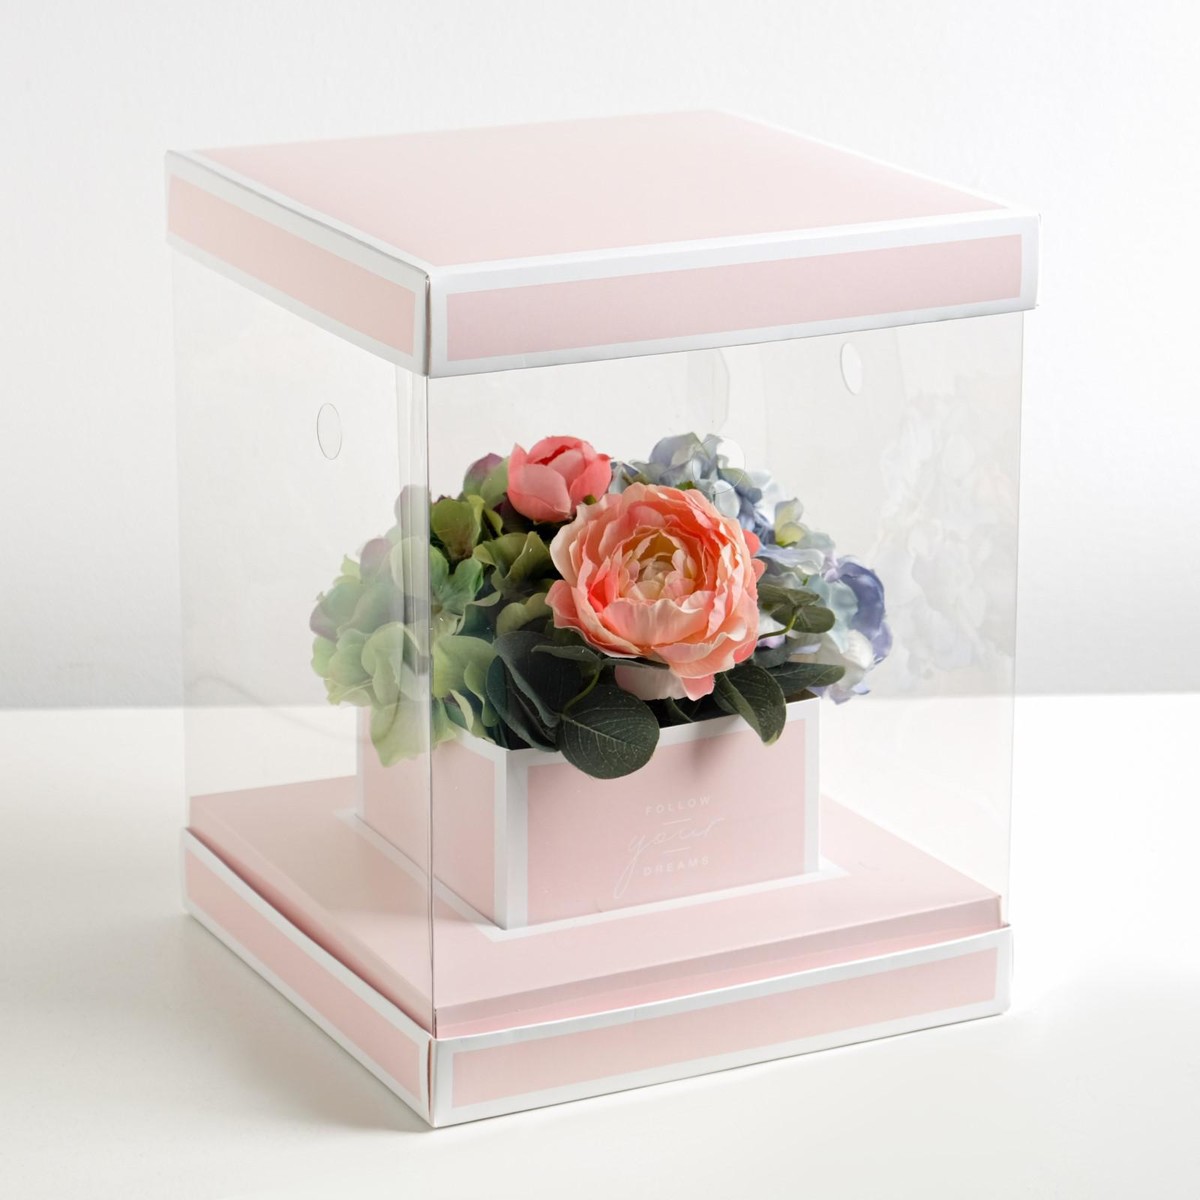 Коробка подарочная для цветов с вазой и pvc окнами складная, упаковка, follow your dreams, 23 х 30 х 23 см коробка для ов с вазой и pvc окнами складная 23 х 30 х 23 см